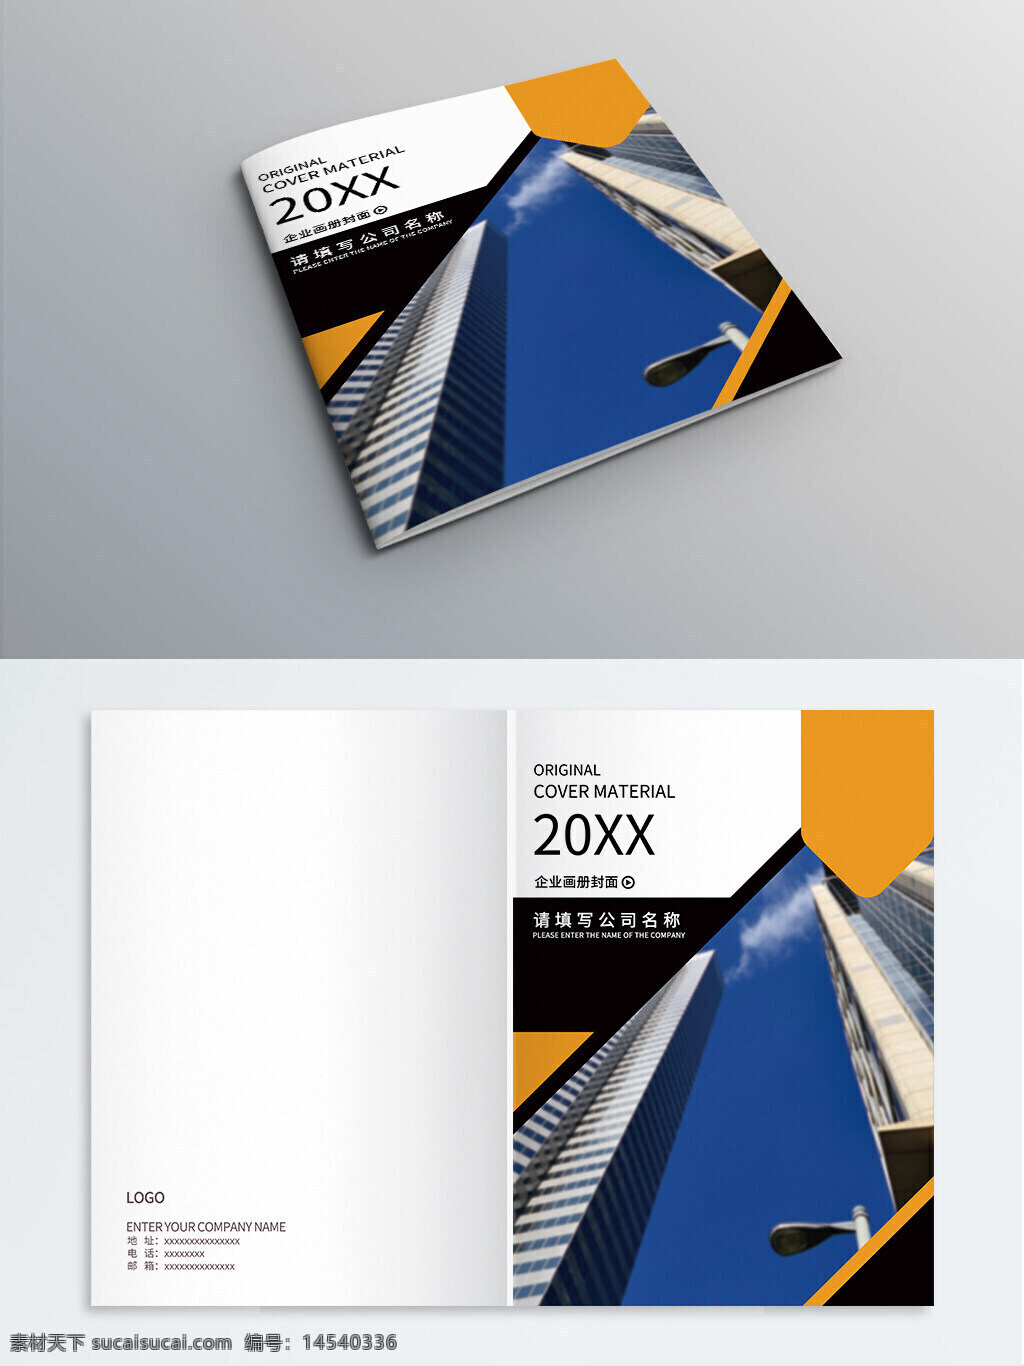 企业画册 公司画册 企业宣传 商务画册 画册封面 封面设计 封面模板 书籍装帧